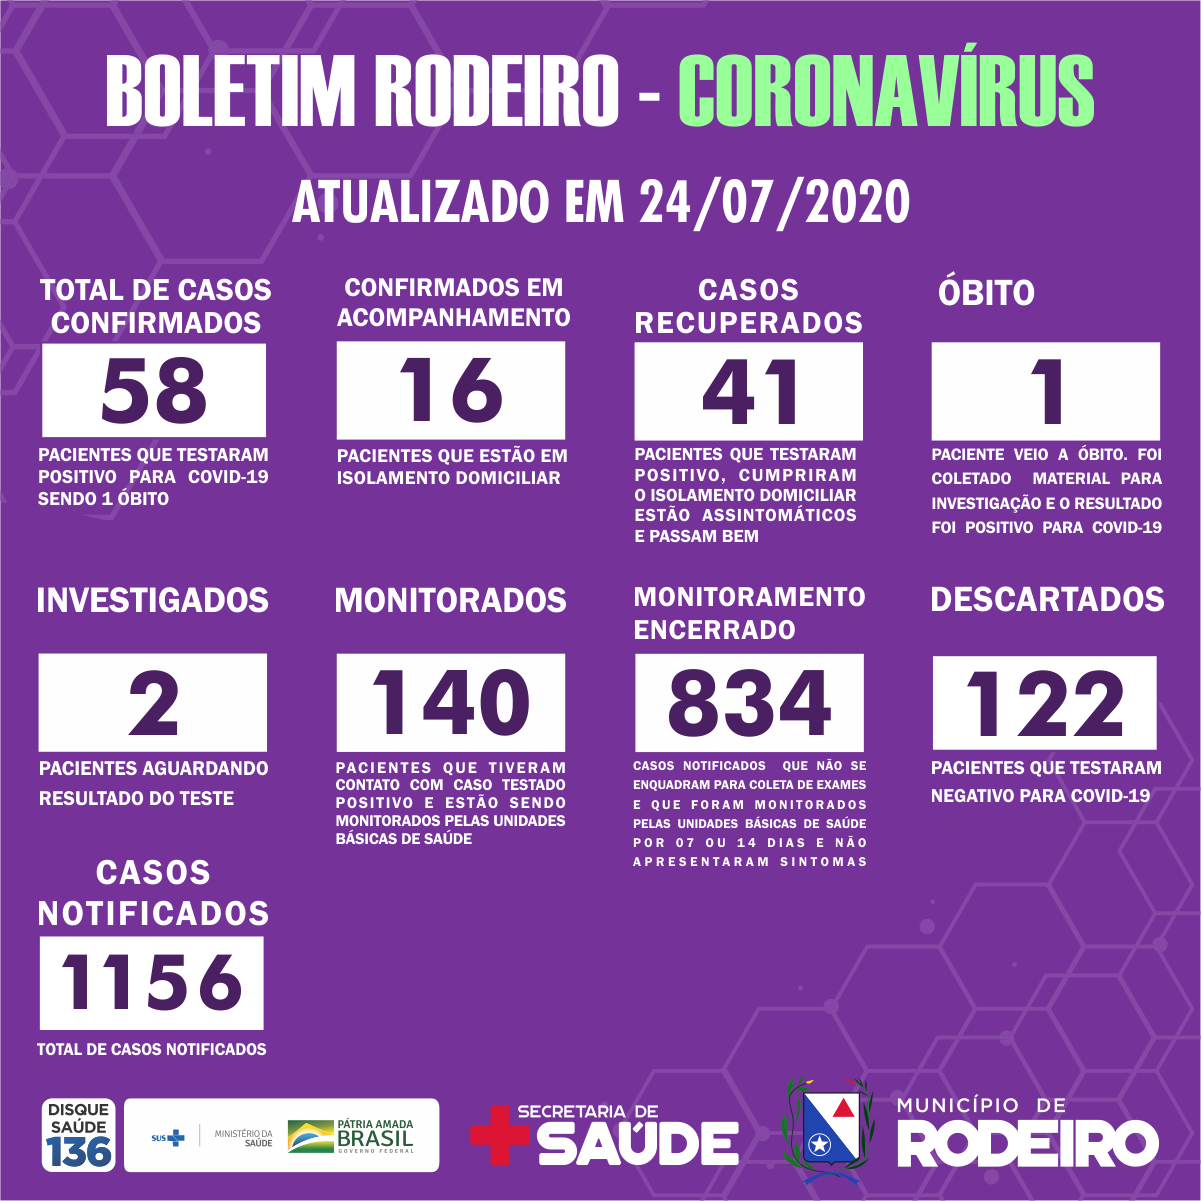 Boletim epidemiológico do Município de Rodeiro coronavírus, atualizado em 24/07/2020